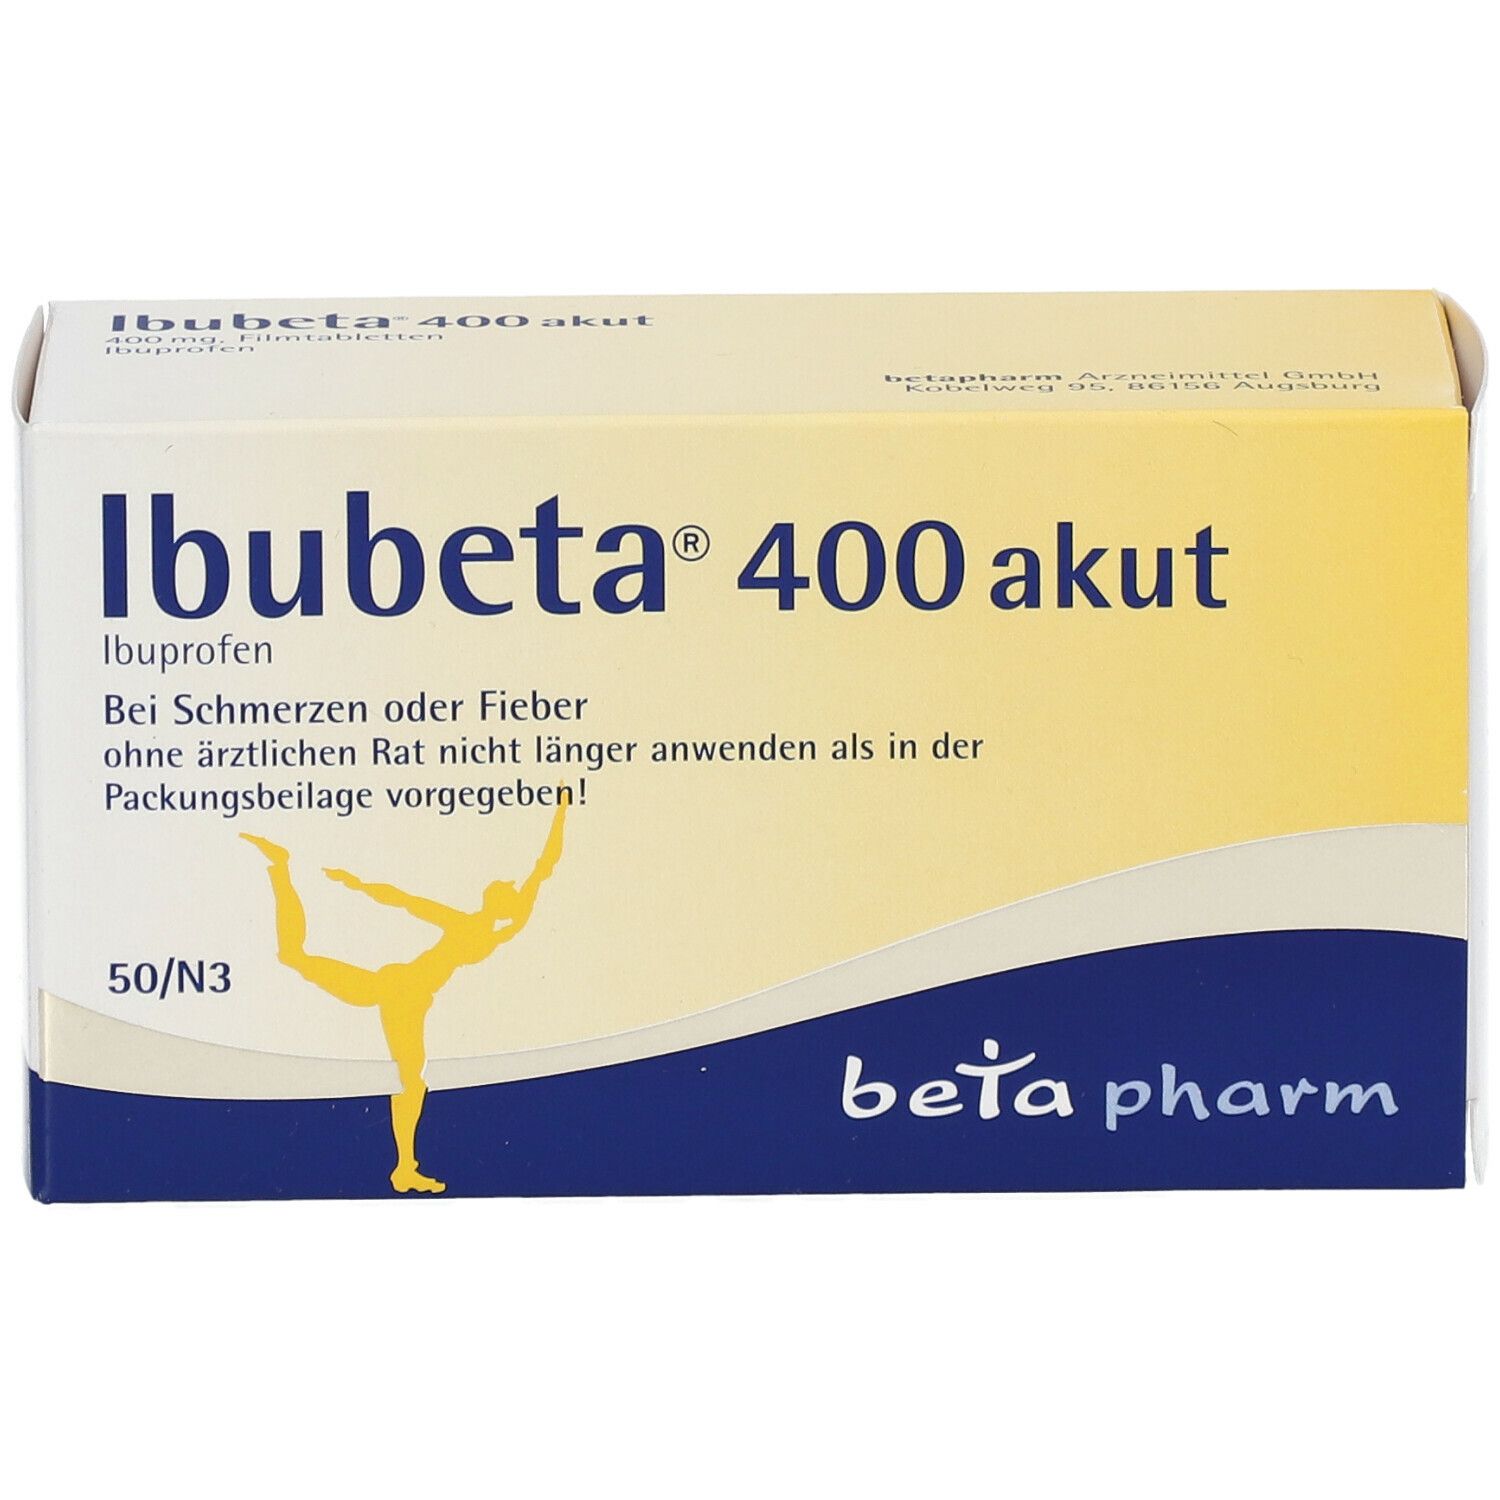 Ibubeta® 400 akut